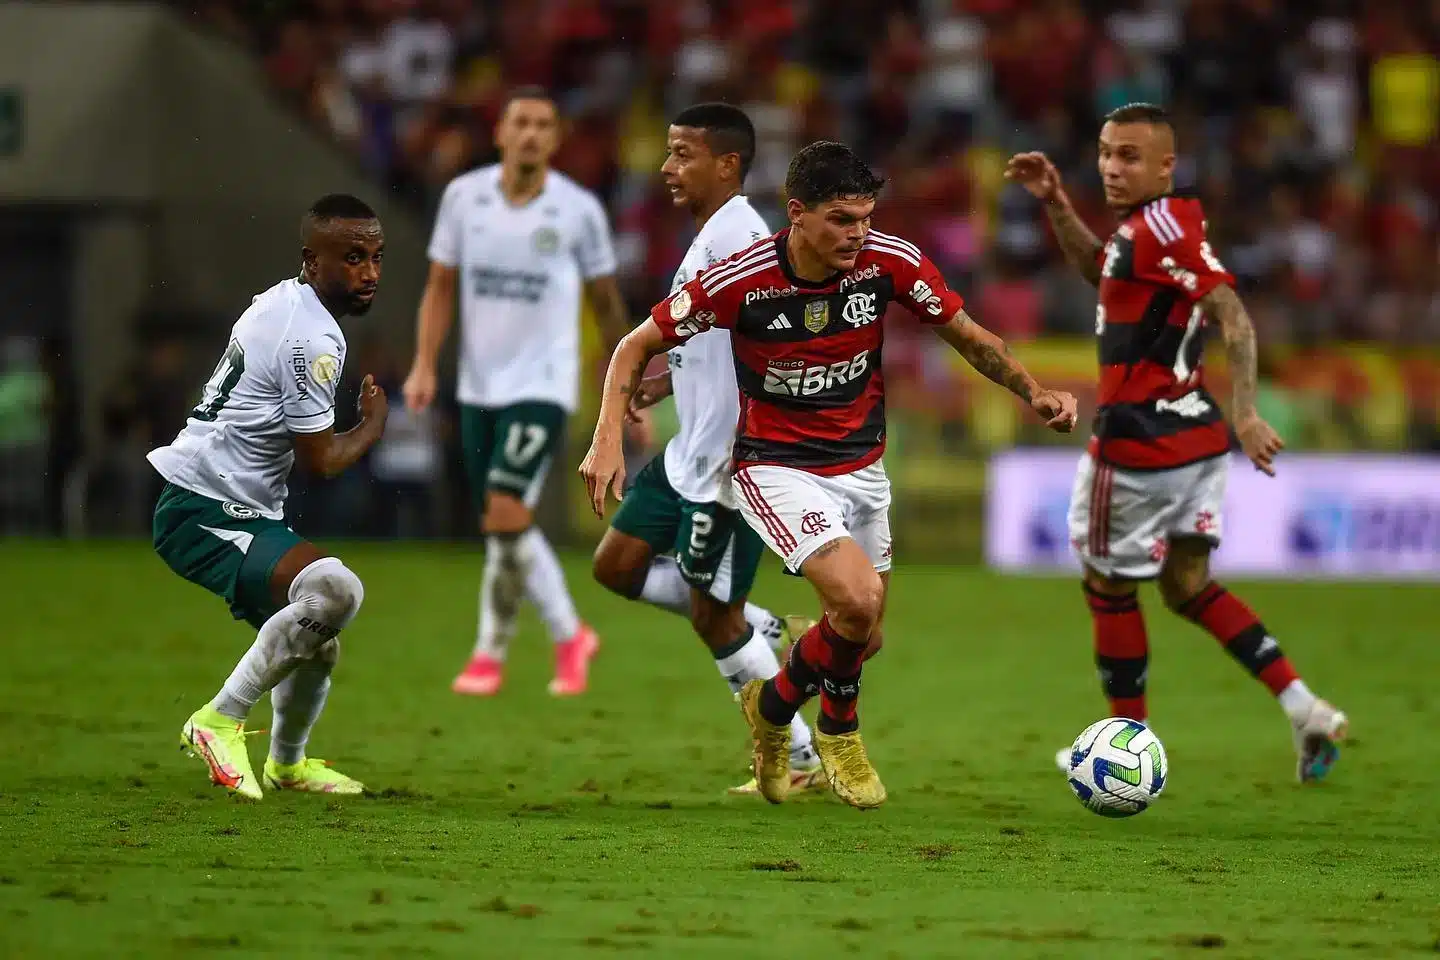 Saiba como assistir o jogo do Flamengo ao vivo pela internet de graça